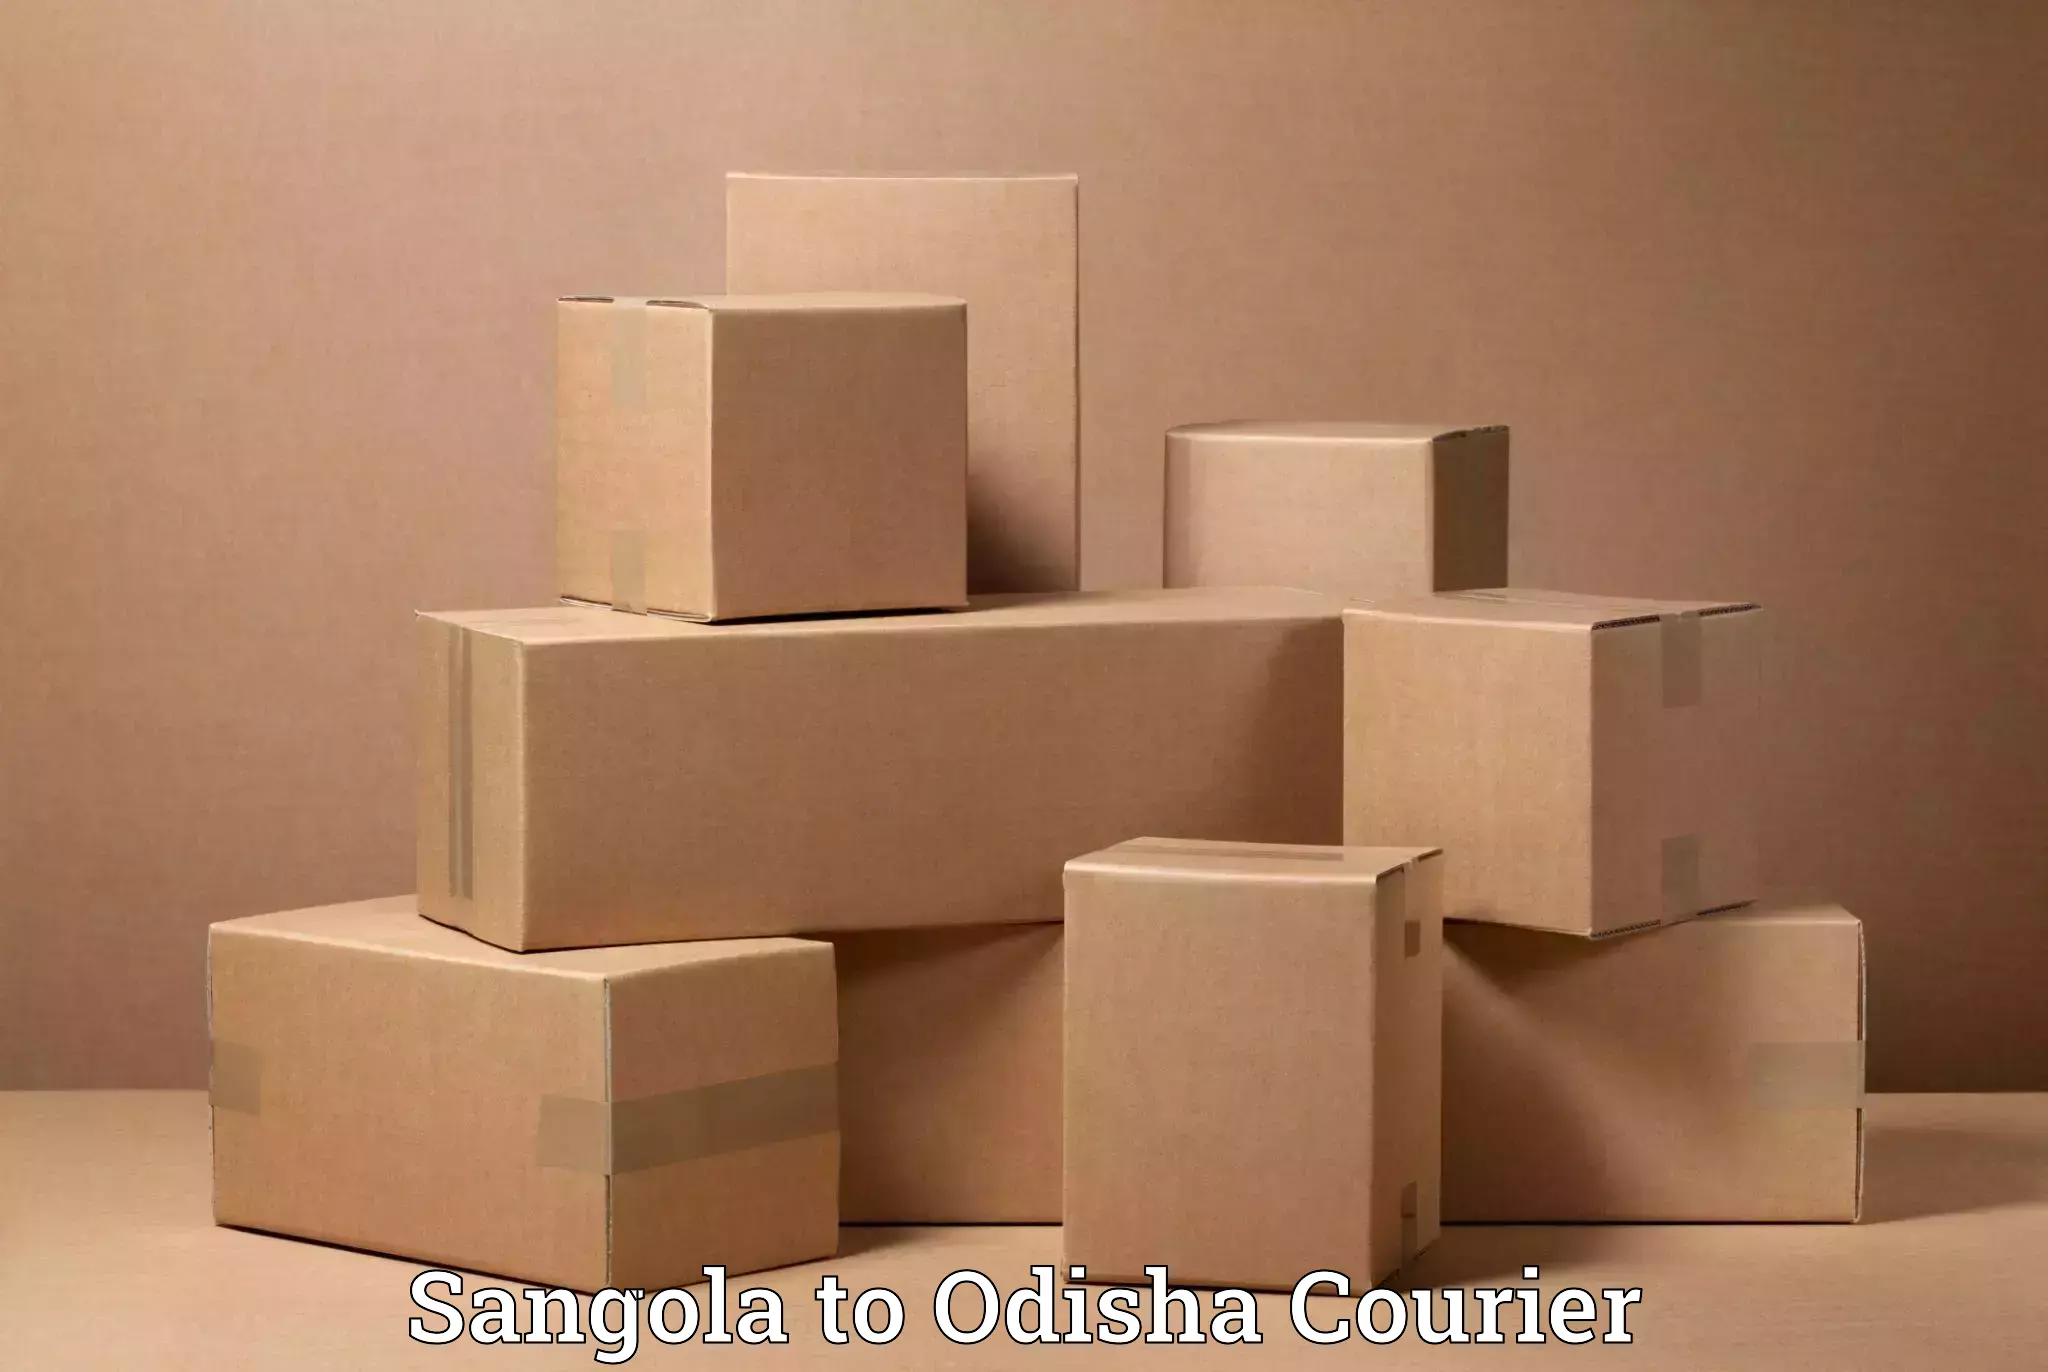 Skilled furniture transporters Sangola to Bhubaneswar